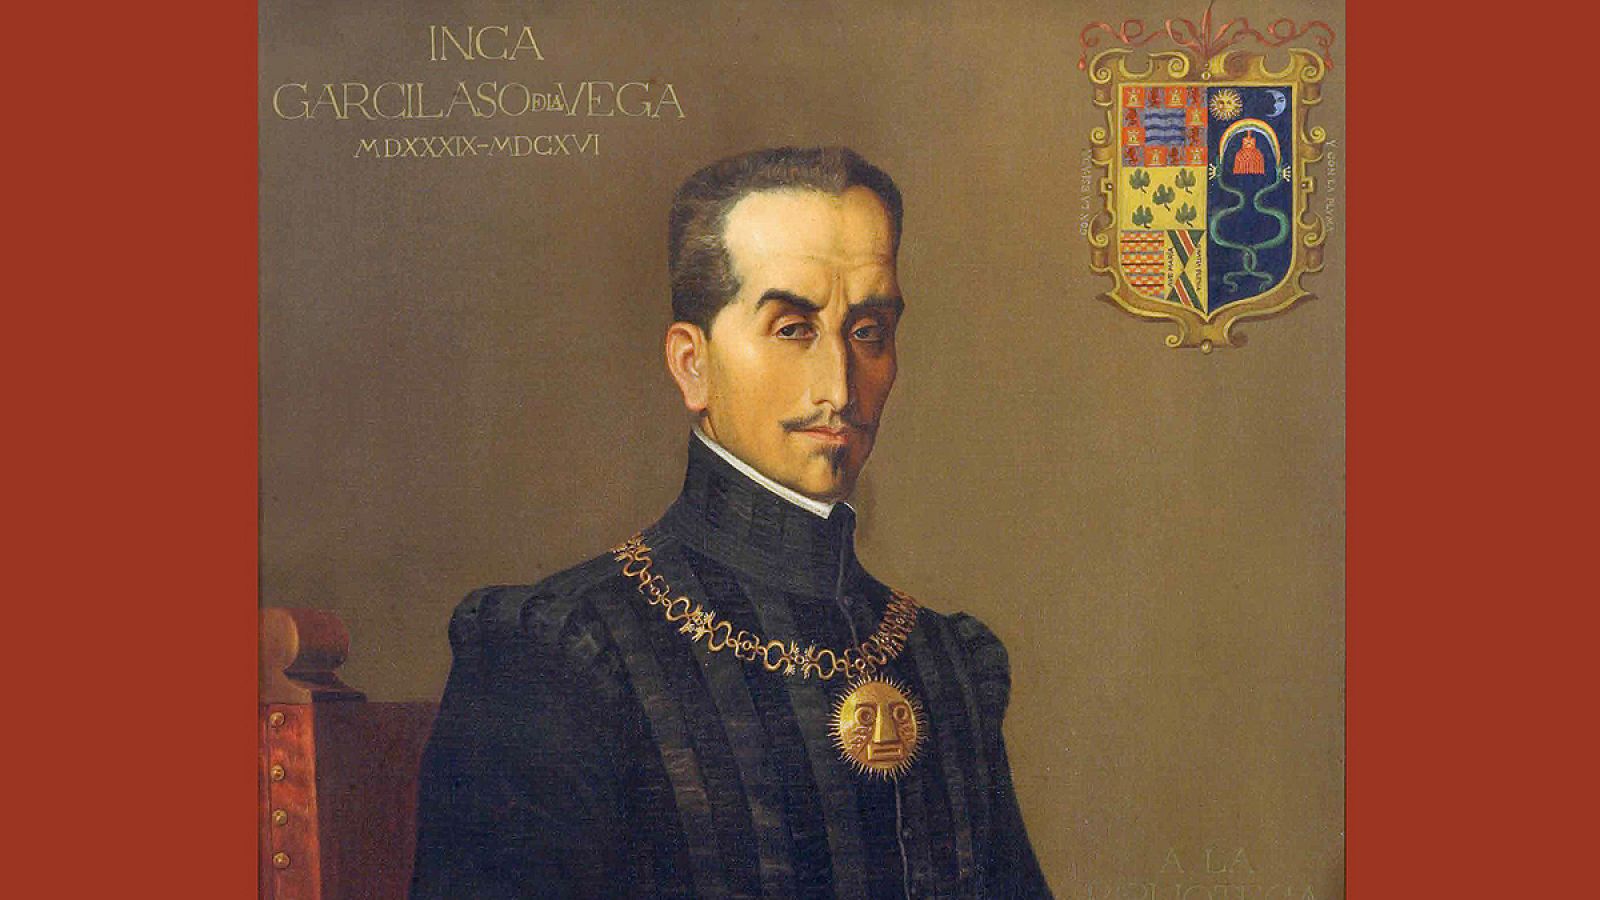 El Inca Garcilaso de la Vega nació en Cuzco (Perú) en 1539, de padre español y madre india.